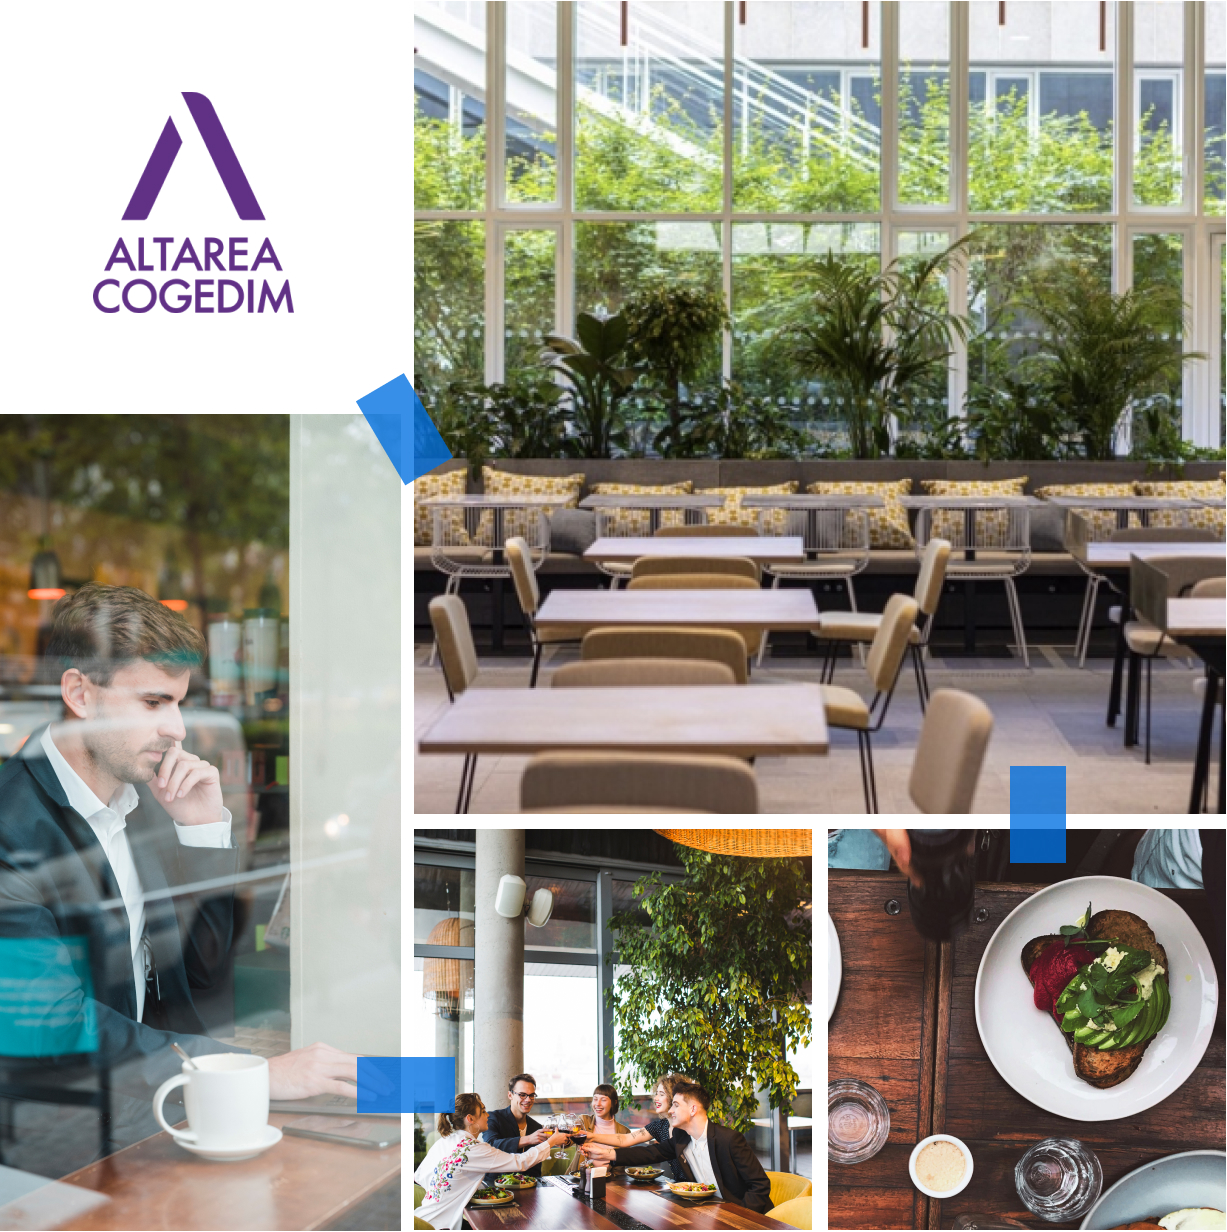 Sélection de photos illustrant la mission du siège social d'Atarea Cogedim, où l'enjeu était de rendre un restaurant d'entreprise innovant